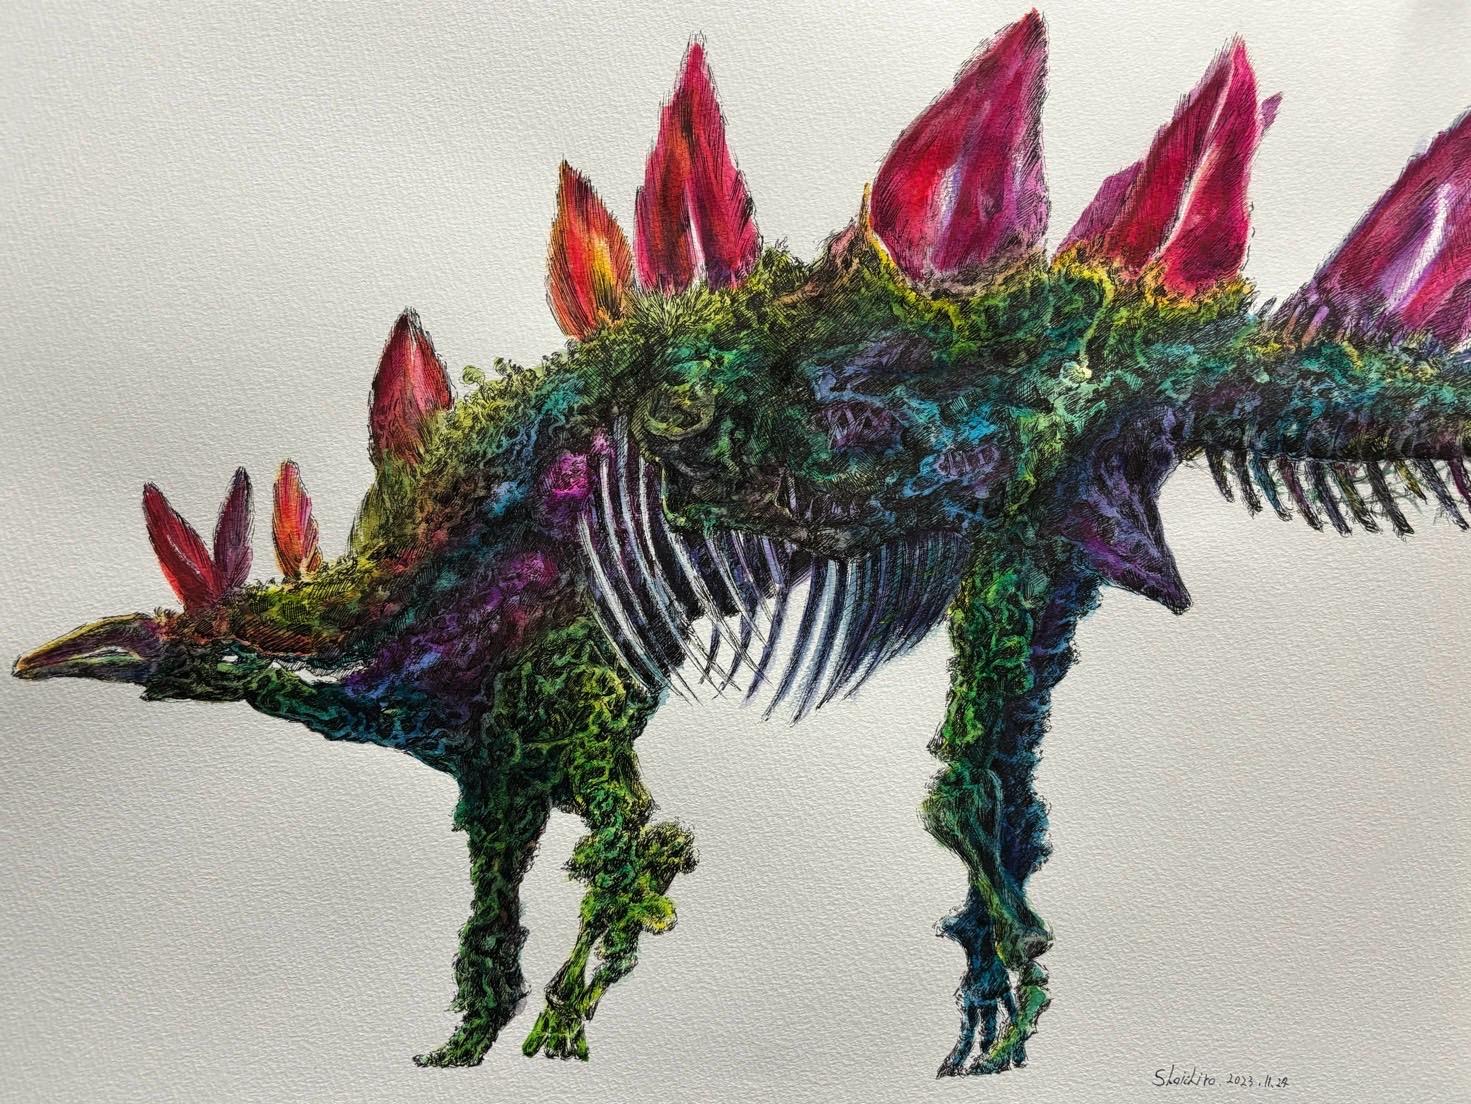 Stegosaurus - FROM ARTIST